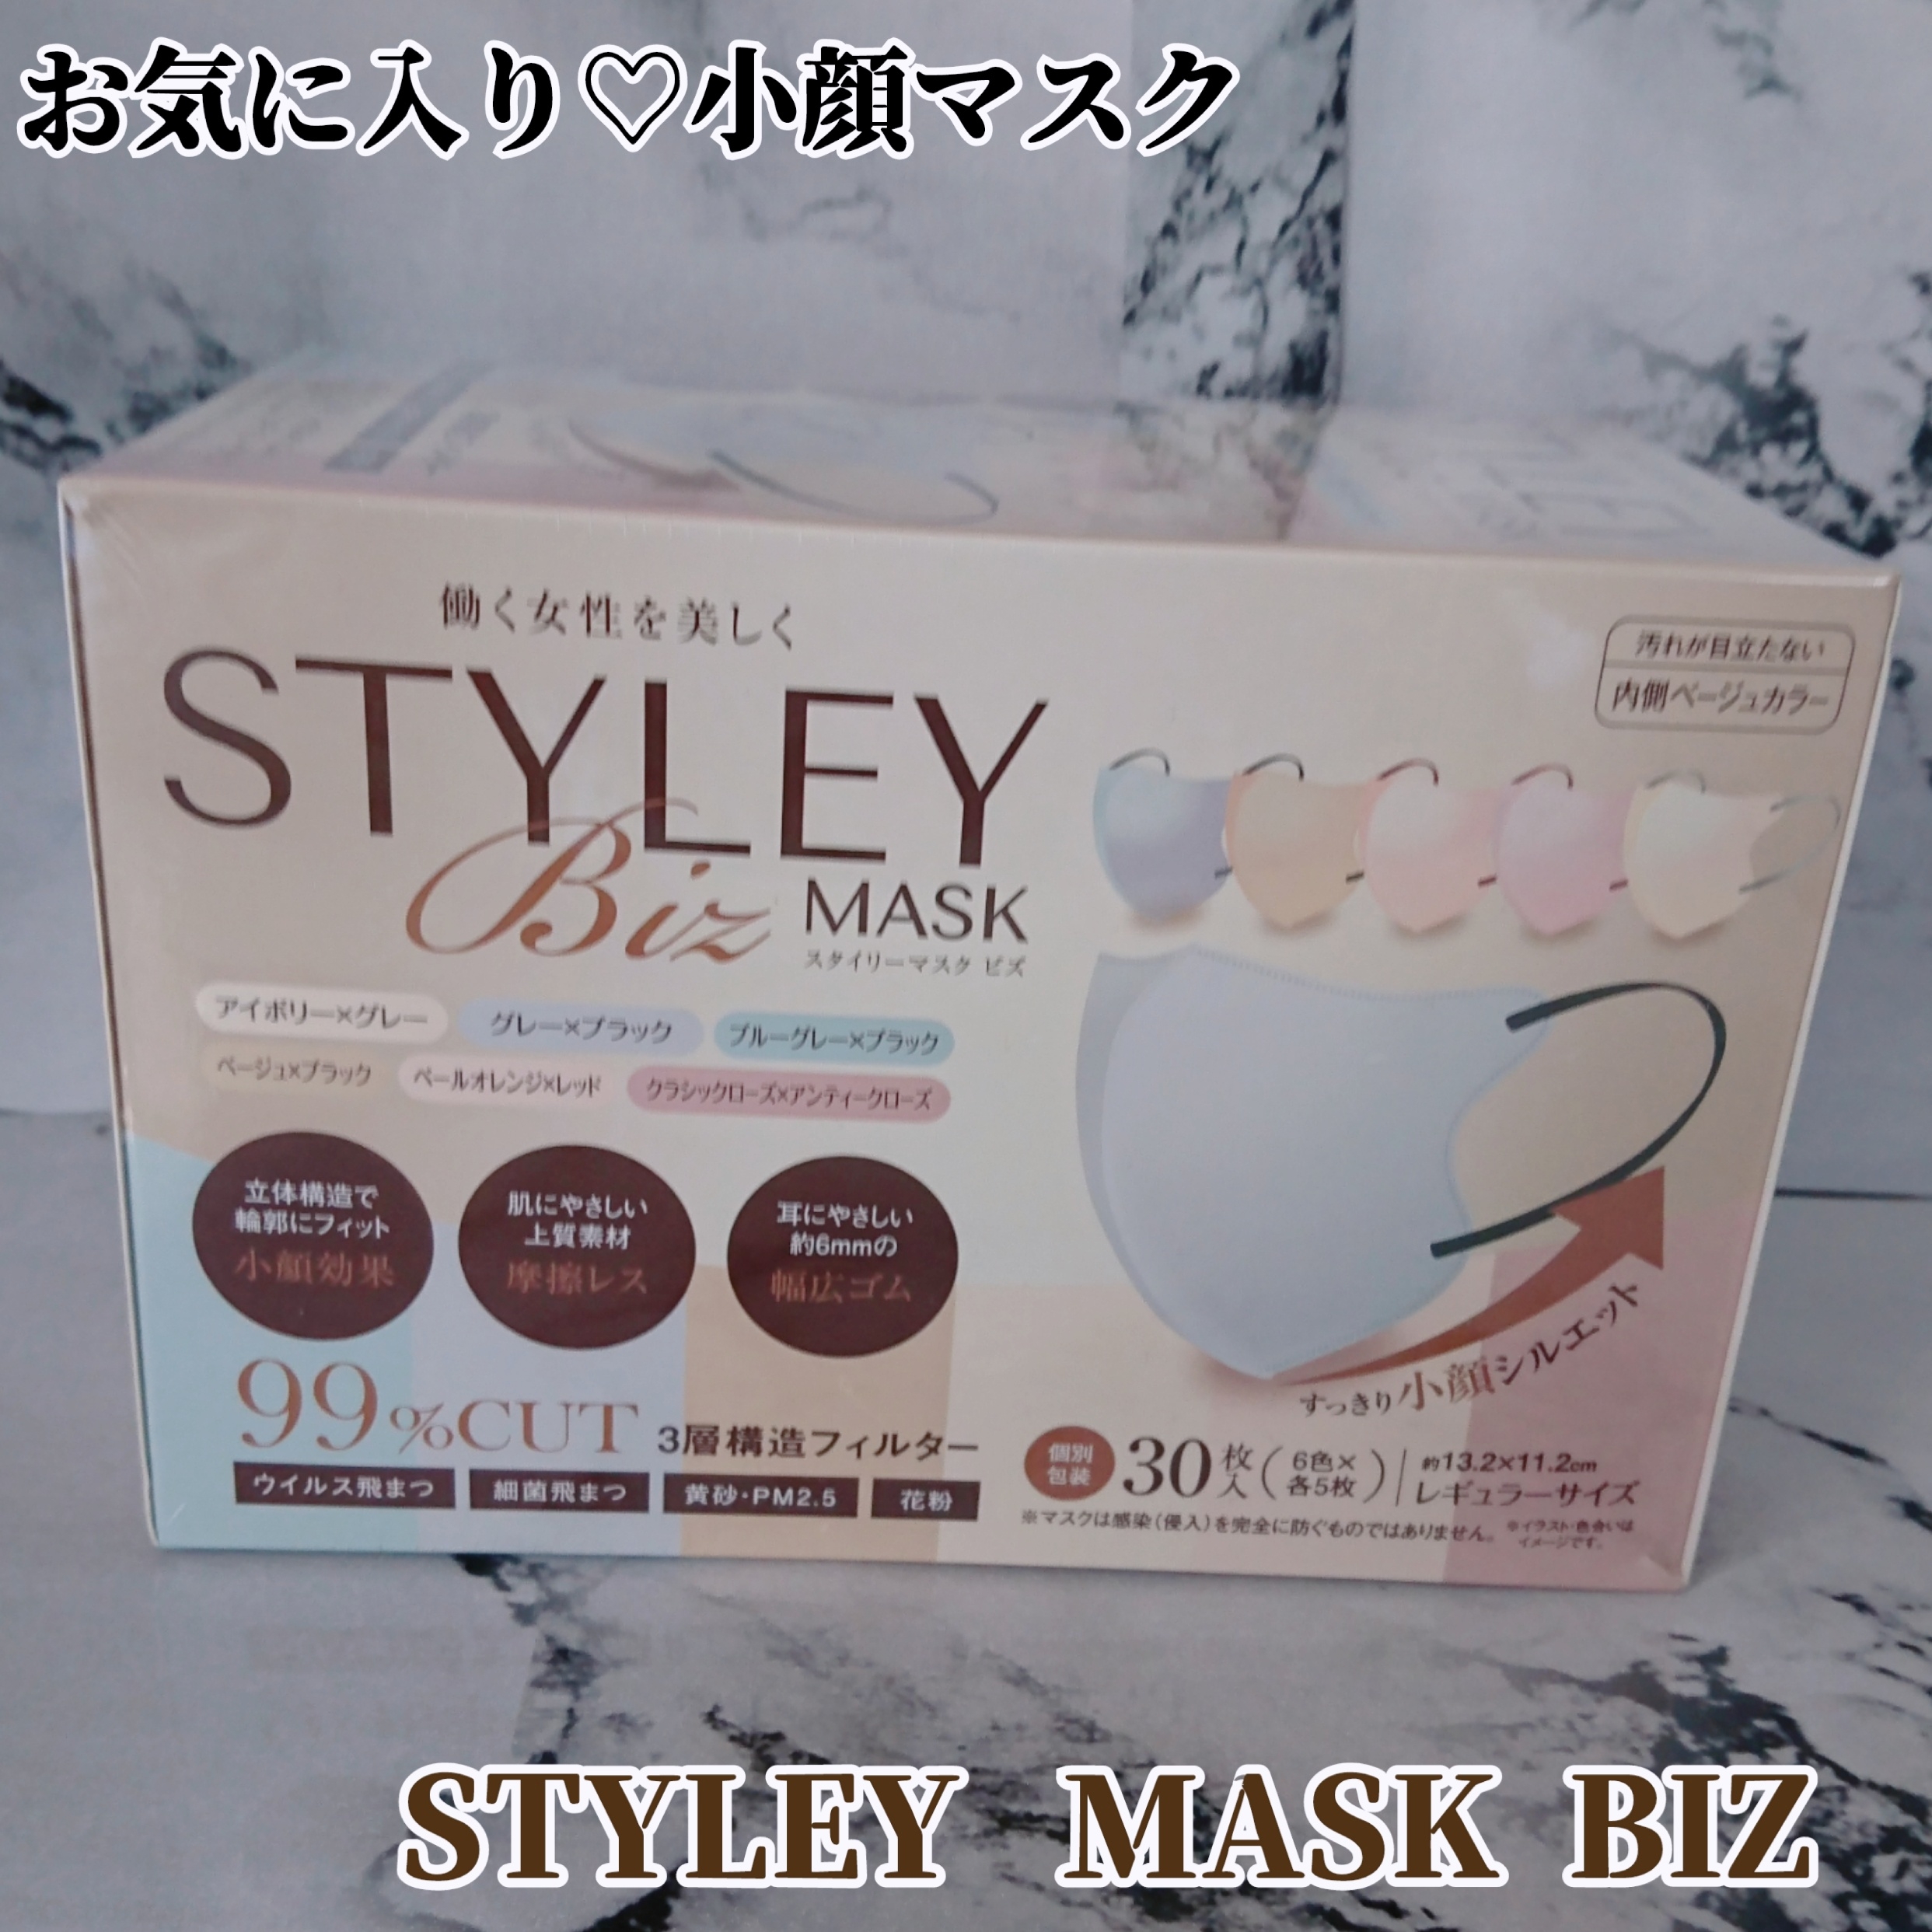 やまと工業 スタイリーマスクを使ったYuKaRi♡さんのクチコミ画像1